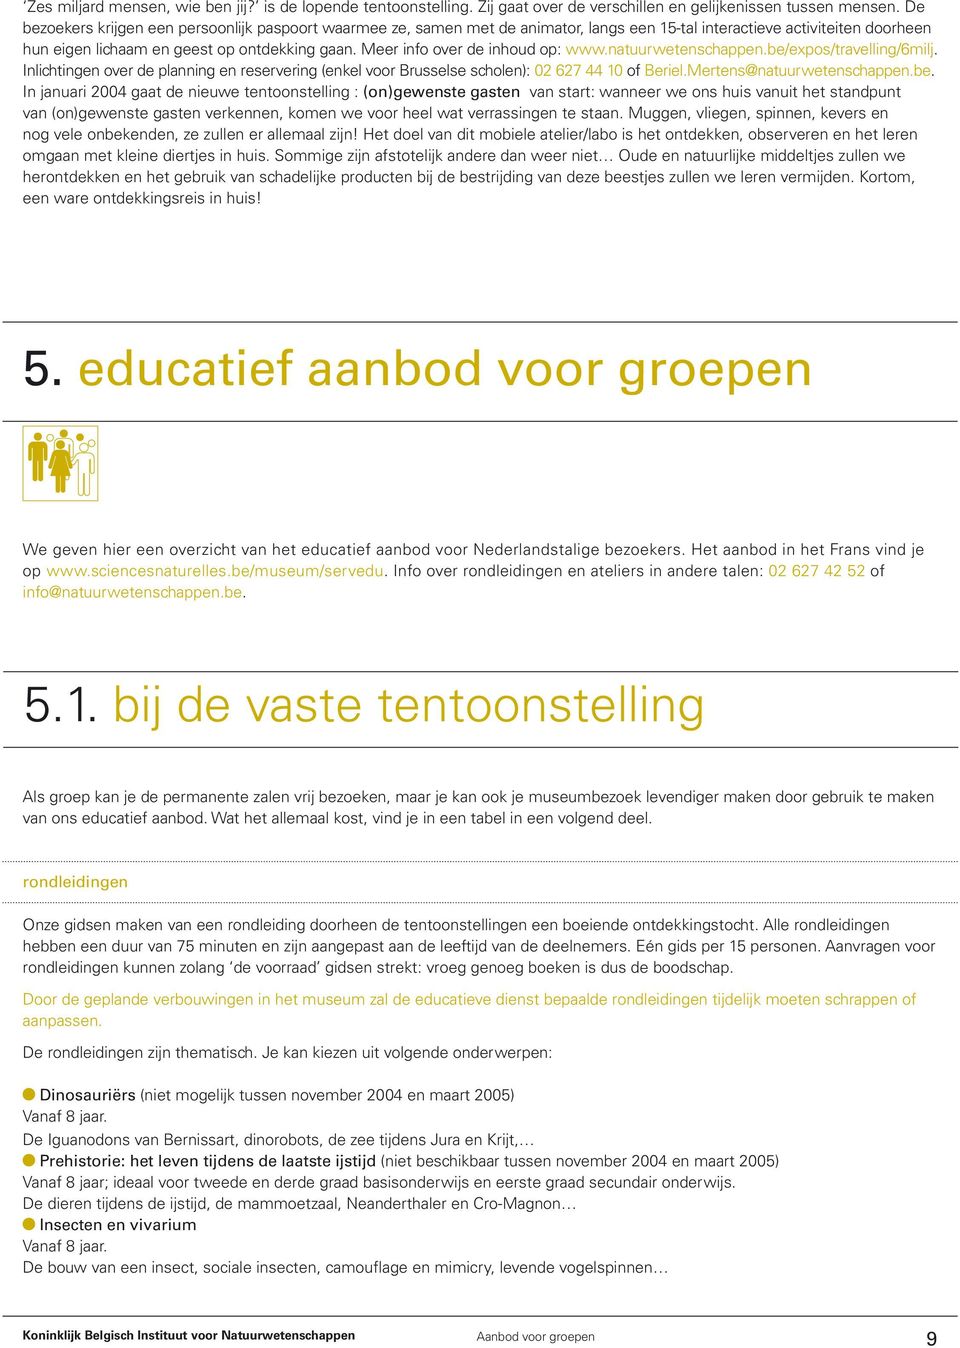 Meer info over de inhoud op: www.natuurwetenschappen.be/expos/travelling/6milj. Inlichtingen over de planning en reservering (enkel voor Brusselse scholen): 02 627 44 10 of Beriel.